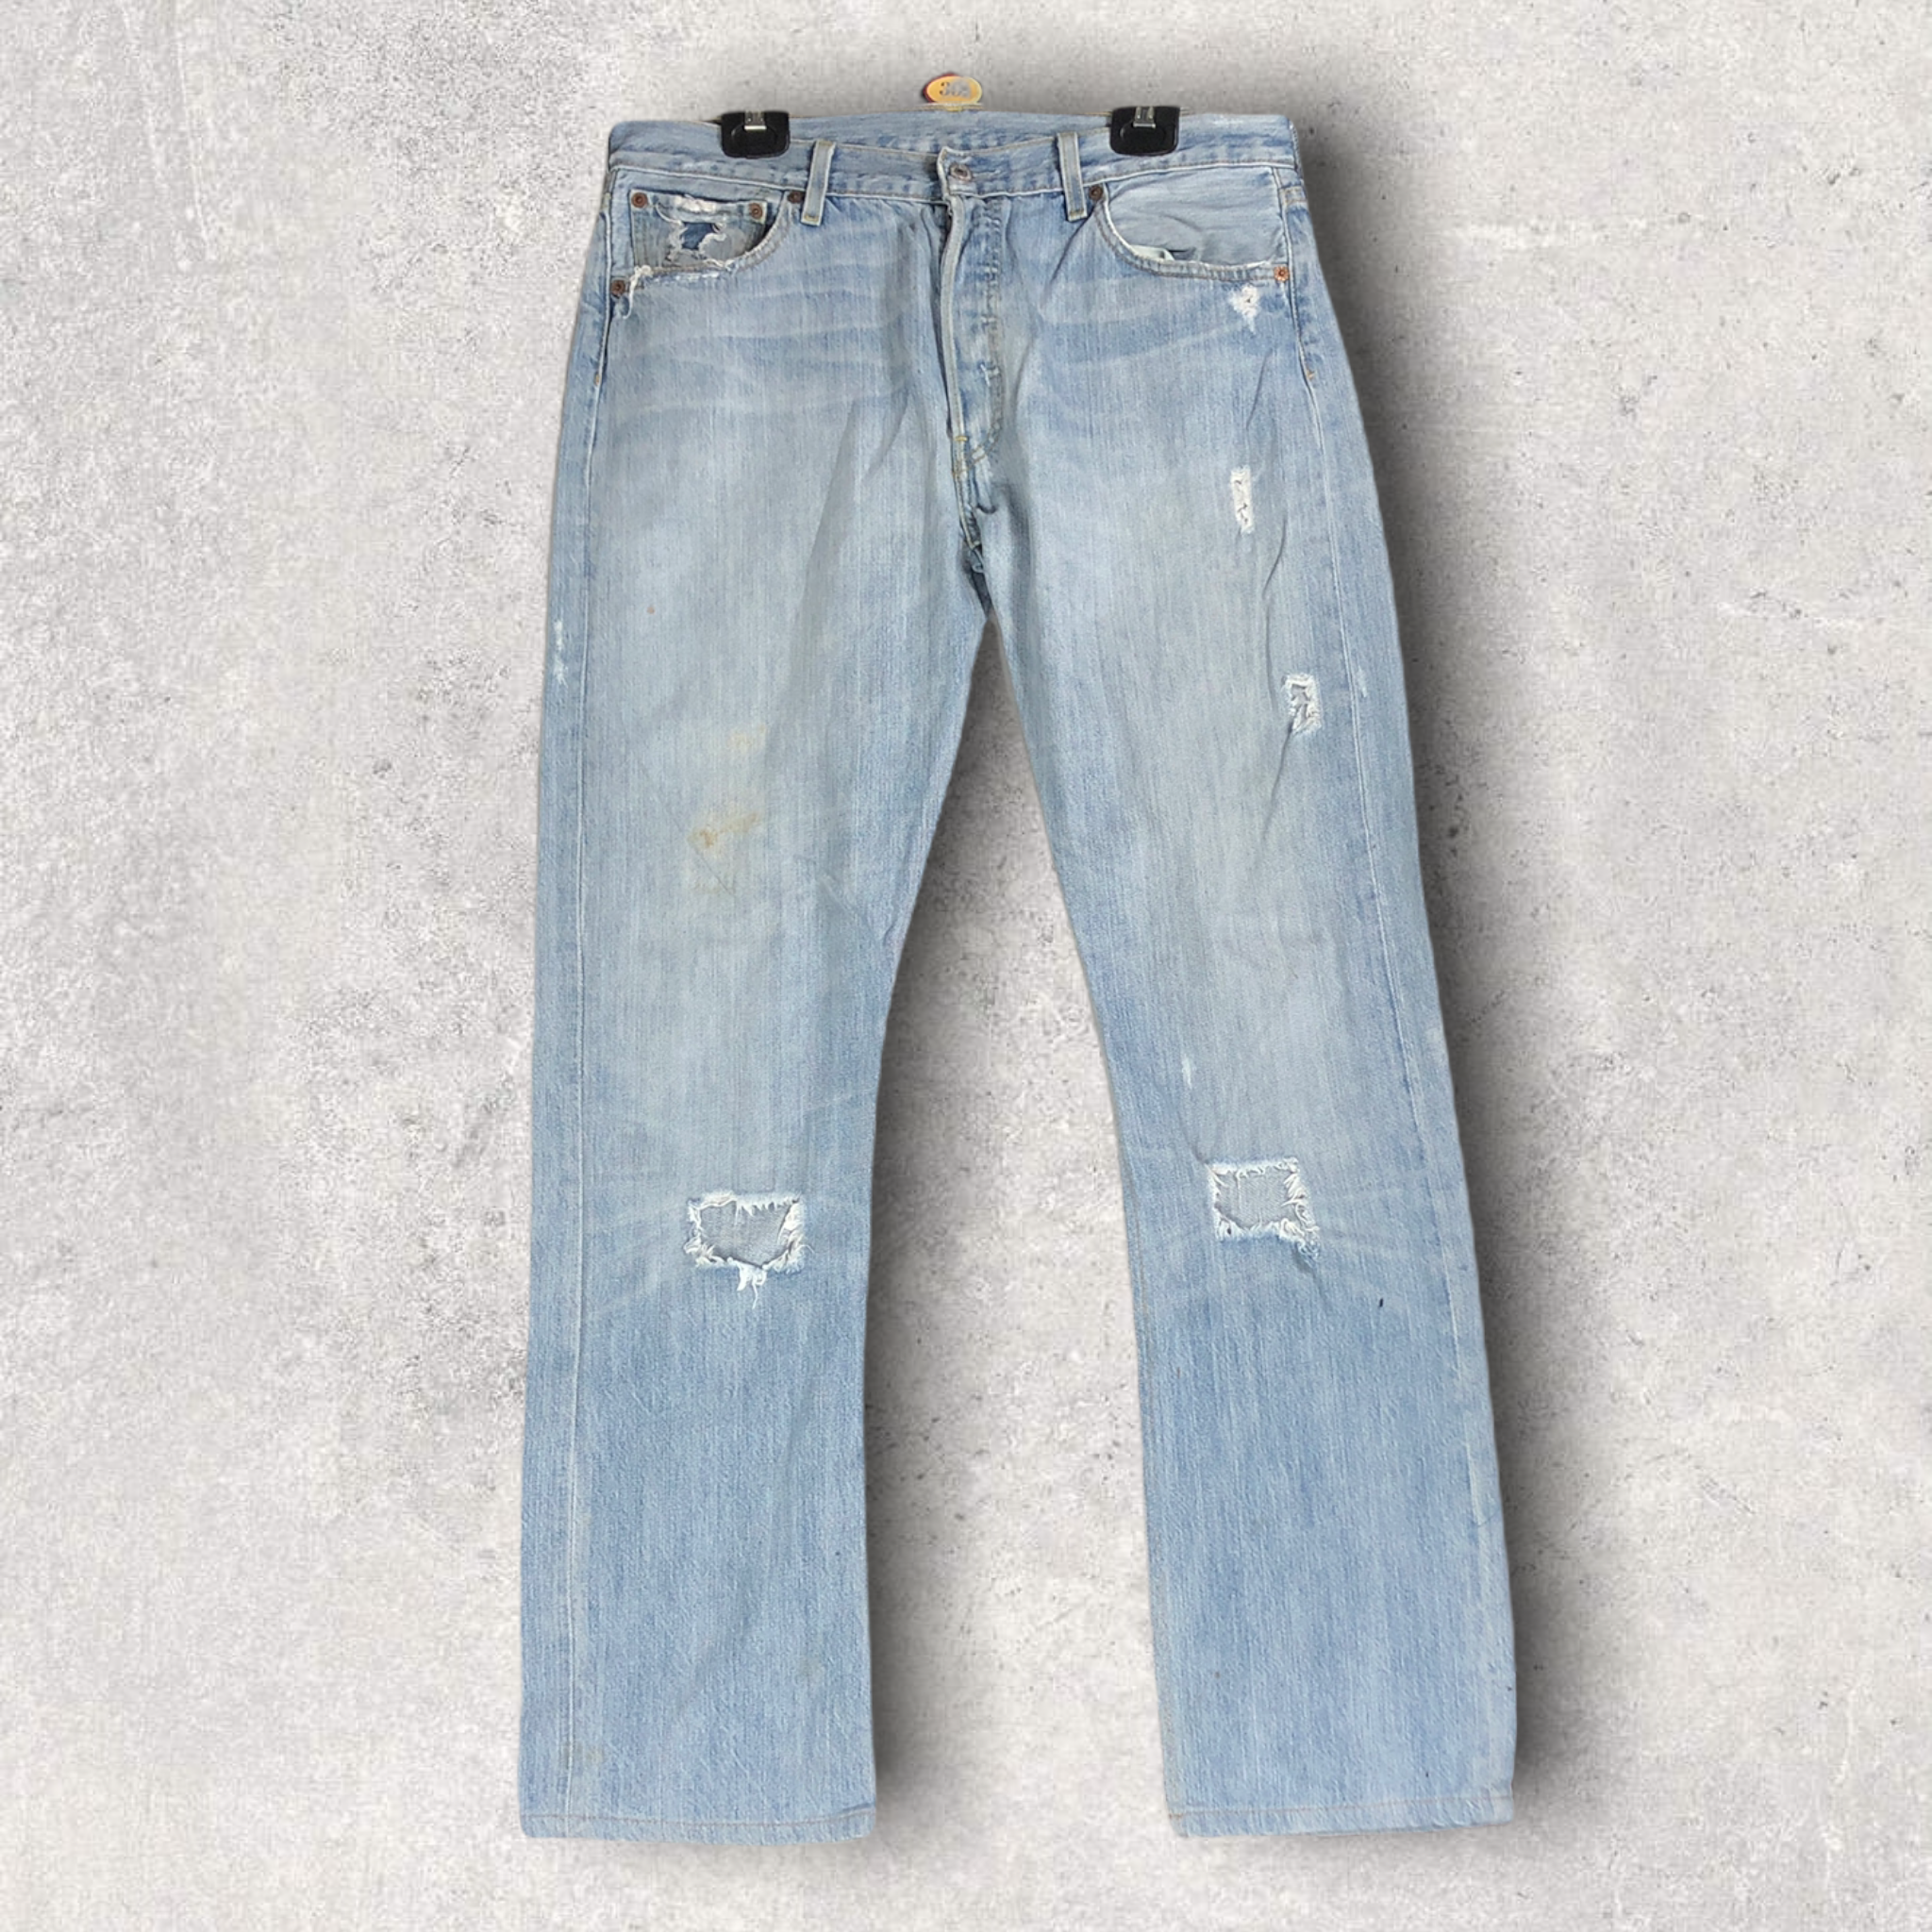 Vintage Levi's jeans 501 W34 L32 men/women